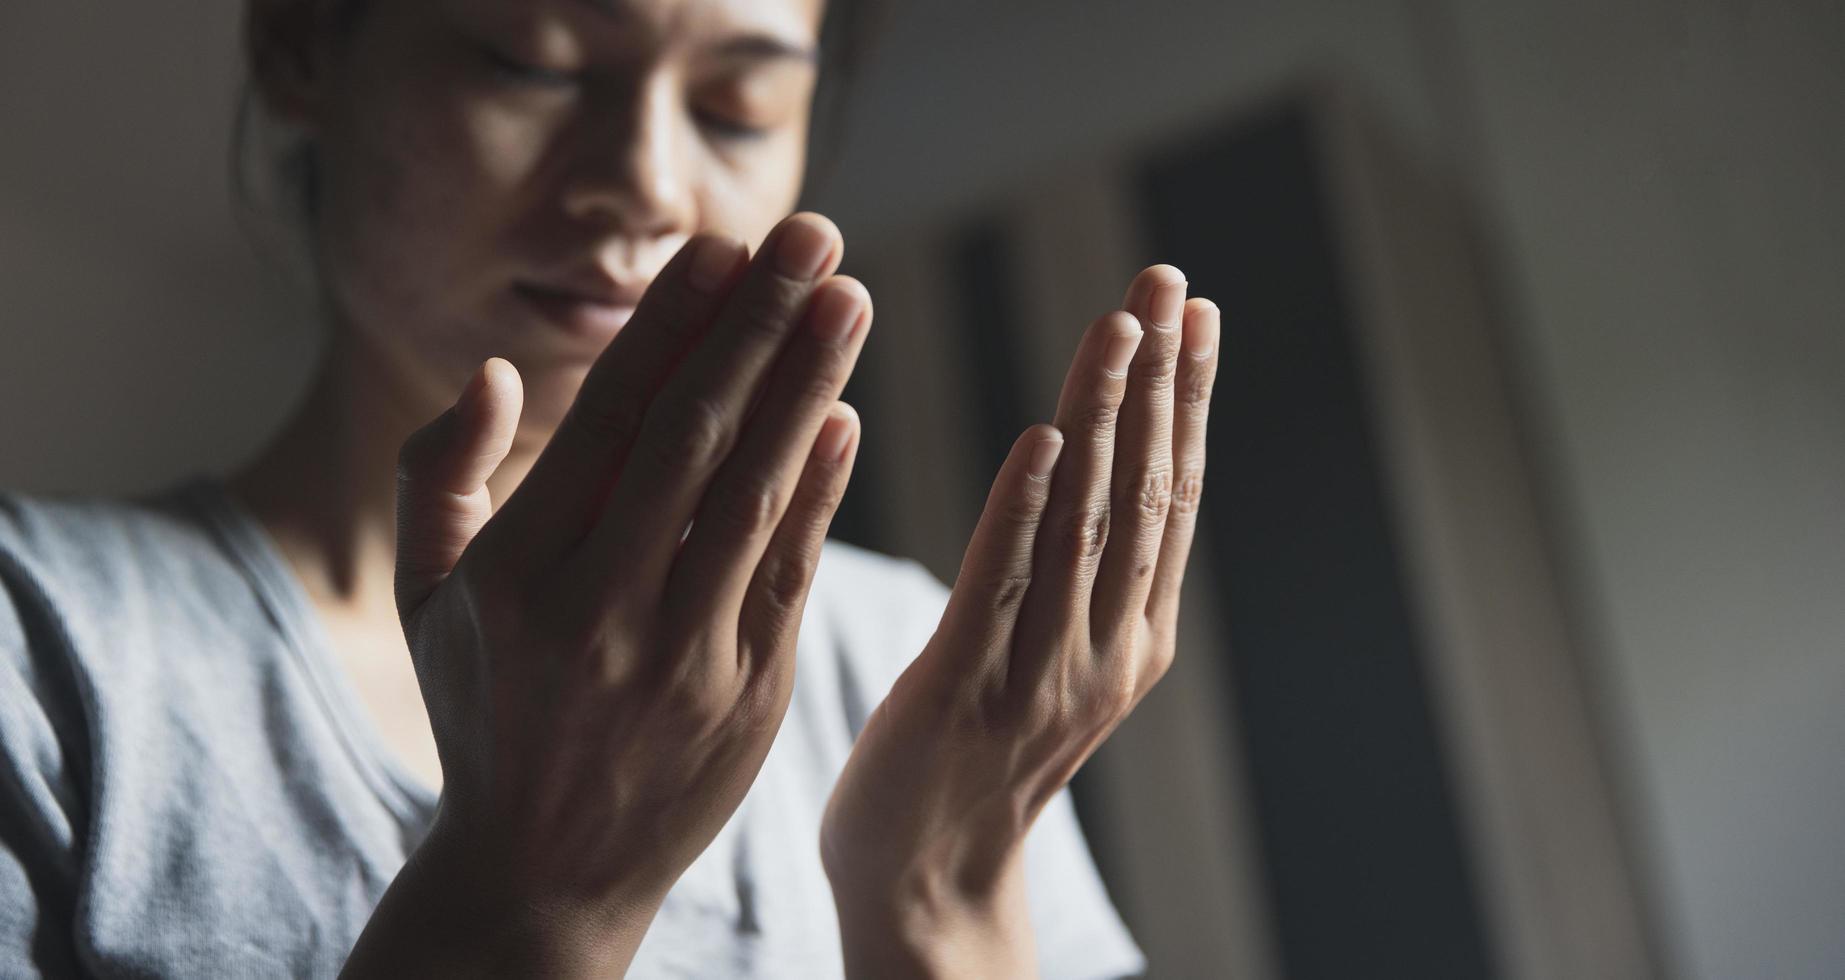 oração de crise da vida cristã a deus. mulher orar para que Deus abençoe a desejar ter uma vida melhor. mãos de mulher rezando a Deus. foto